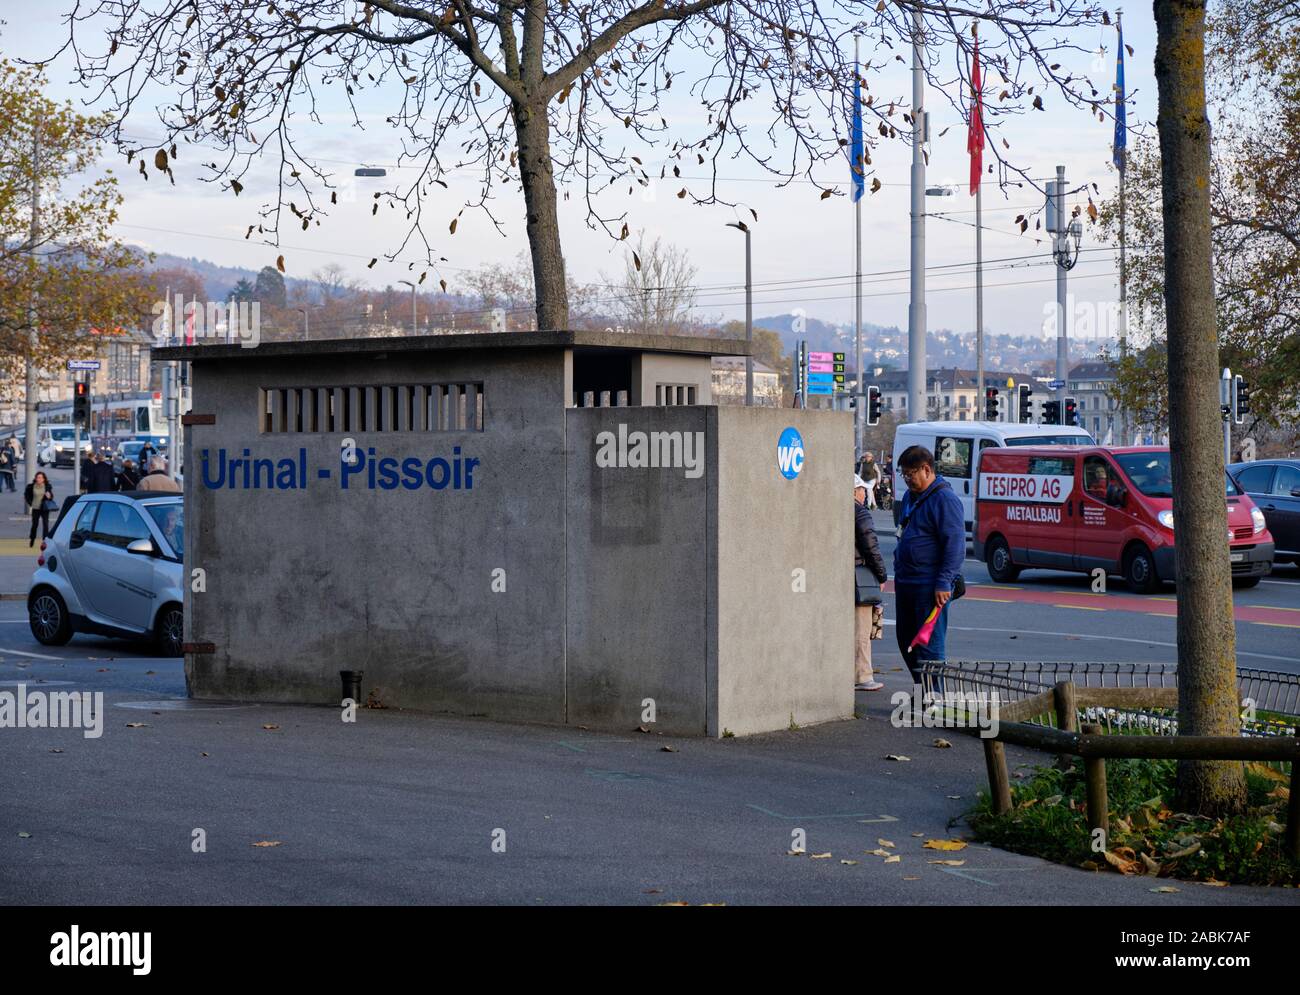 Public Urinal in urban park in Zurich, Switzerland, Stock Photo